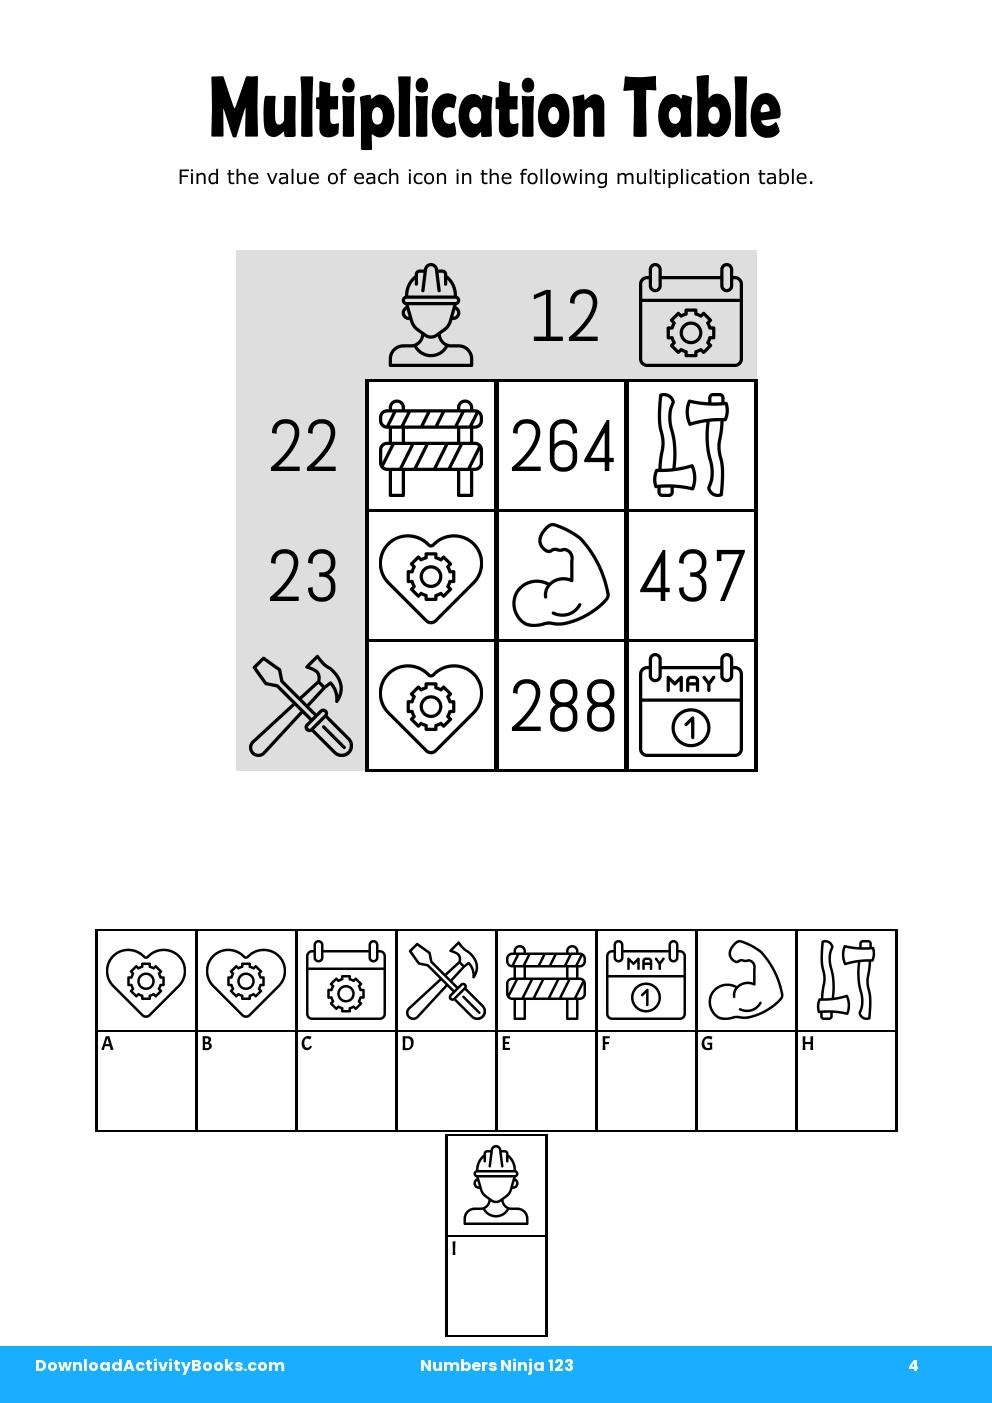 Multiplication Table in Numbers Ninja 123